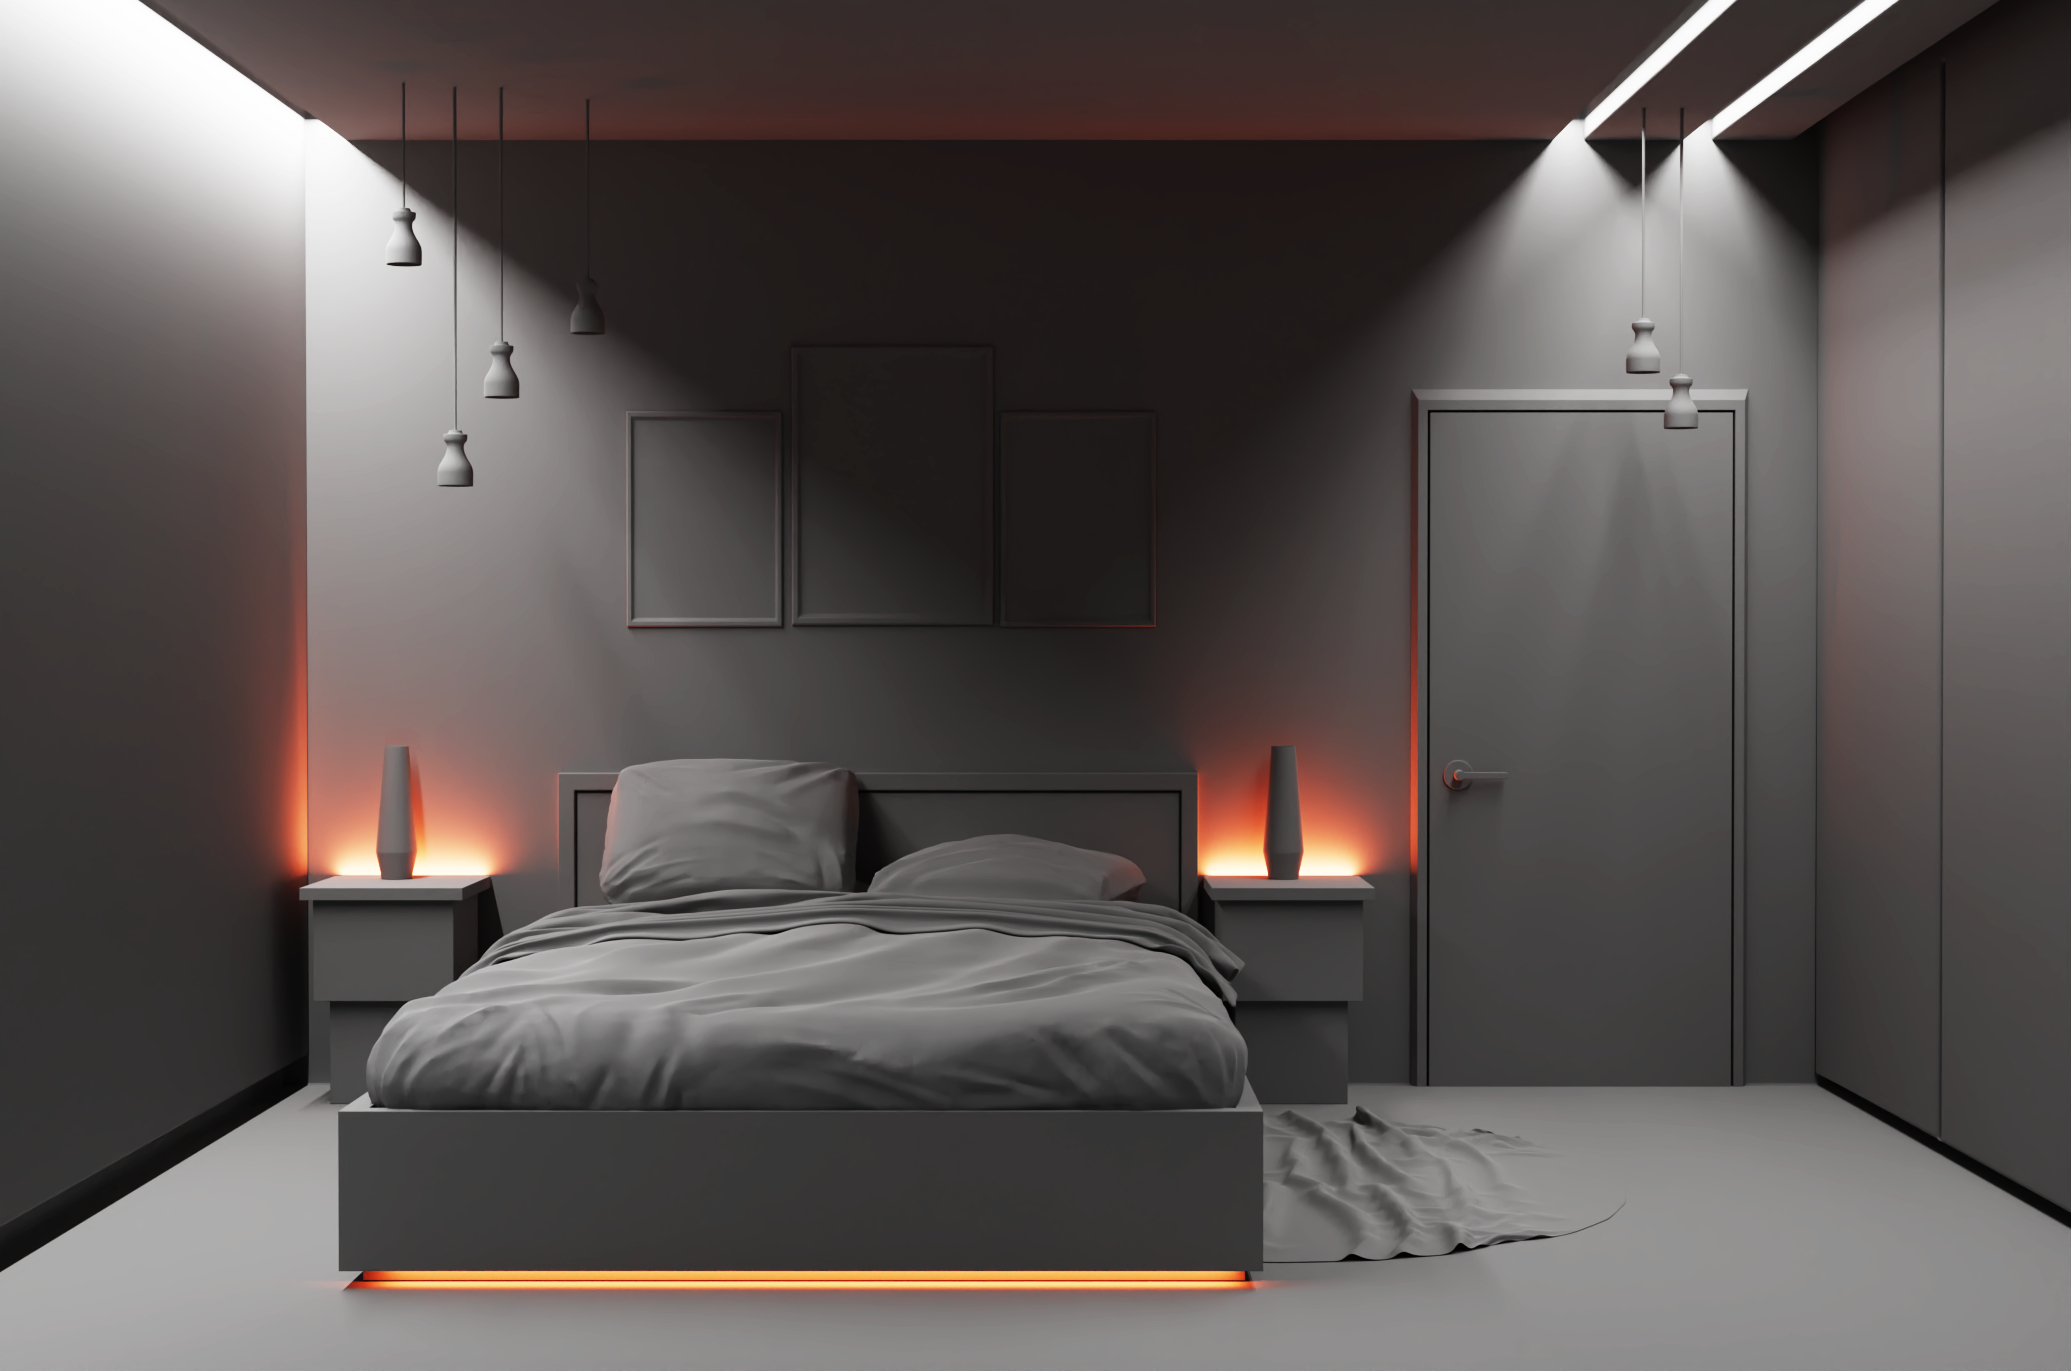 Chambre à coucher dans Blender cycles render image